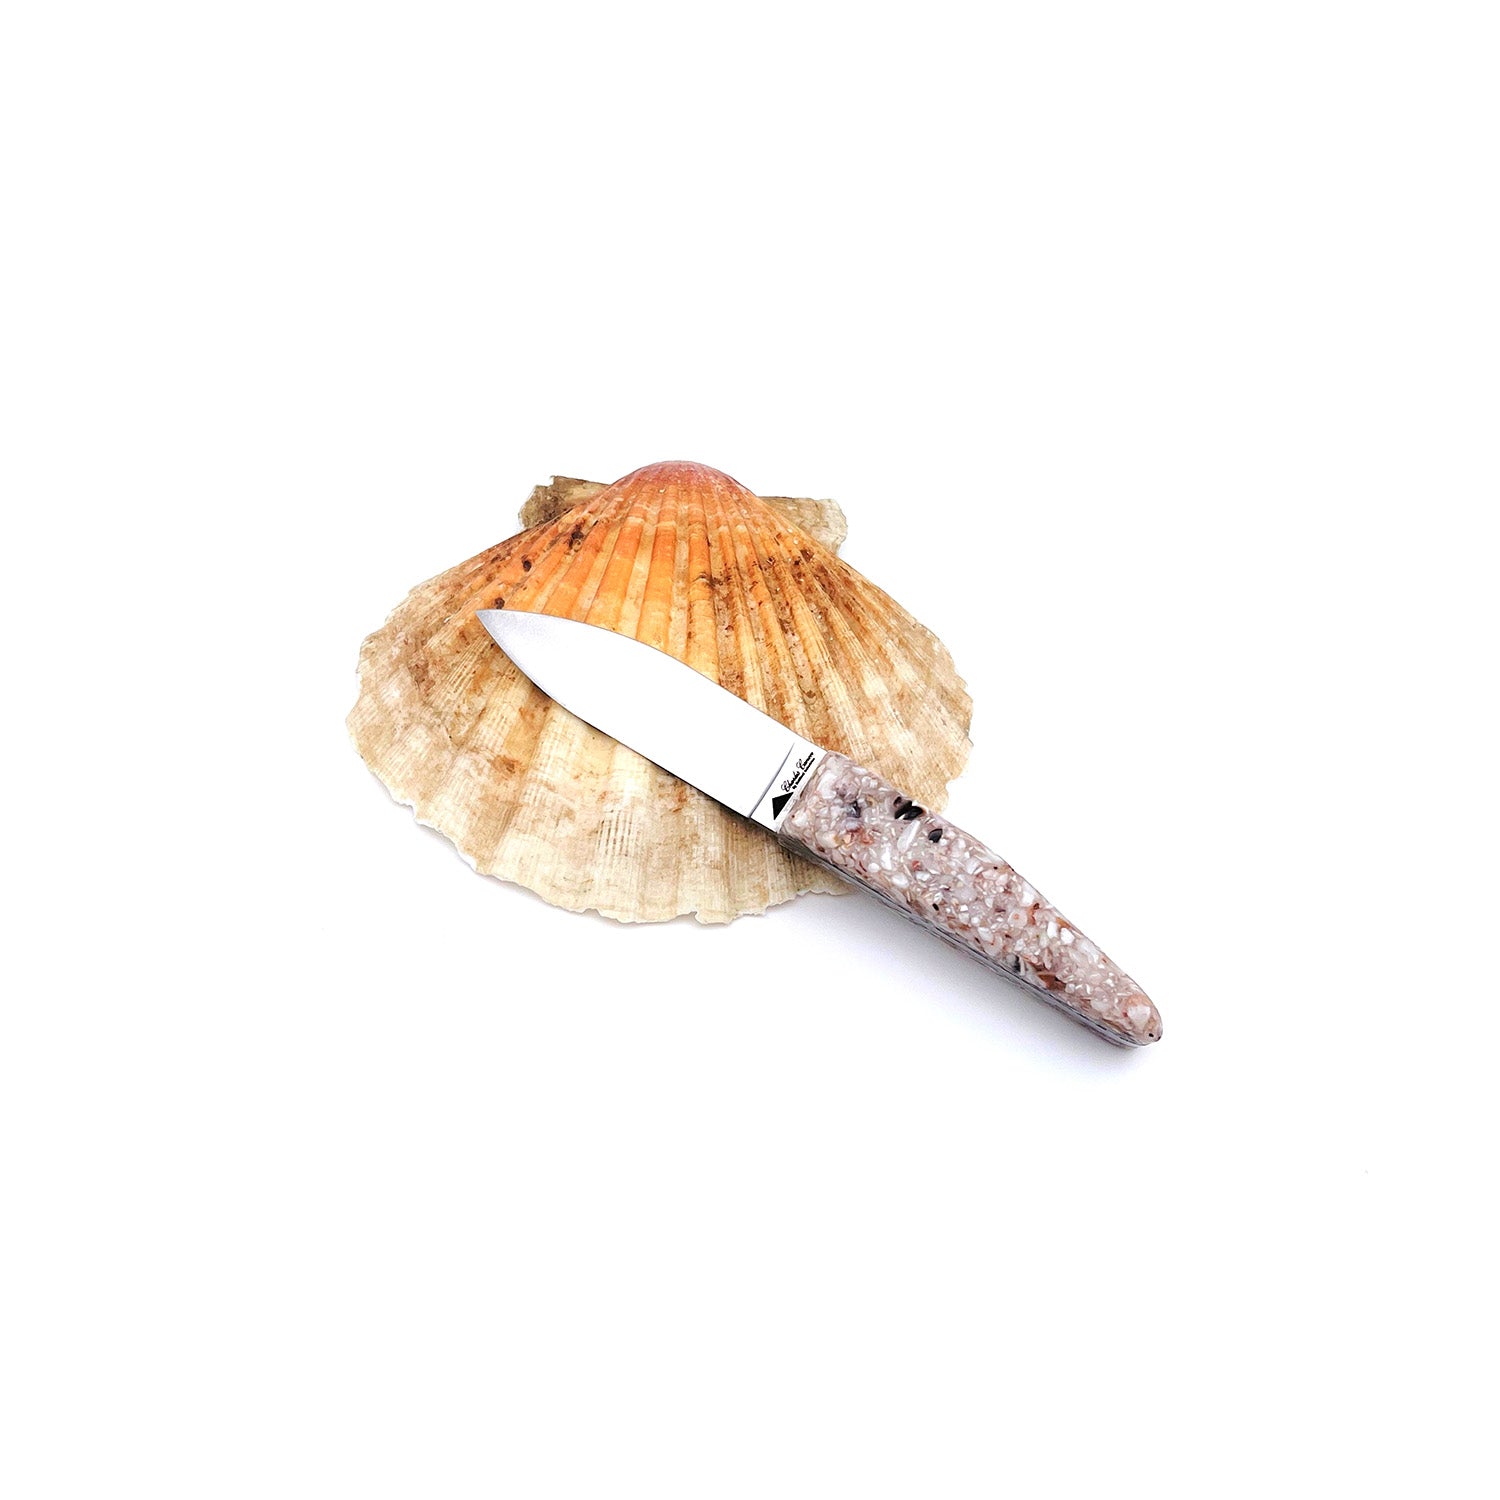 Kleines Austernmesser mit einem Griff aus recycelten Jakobsmuschelschalen